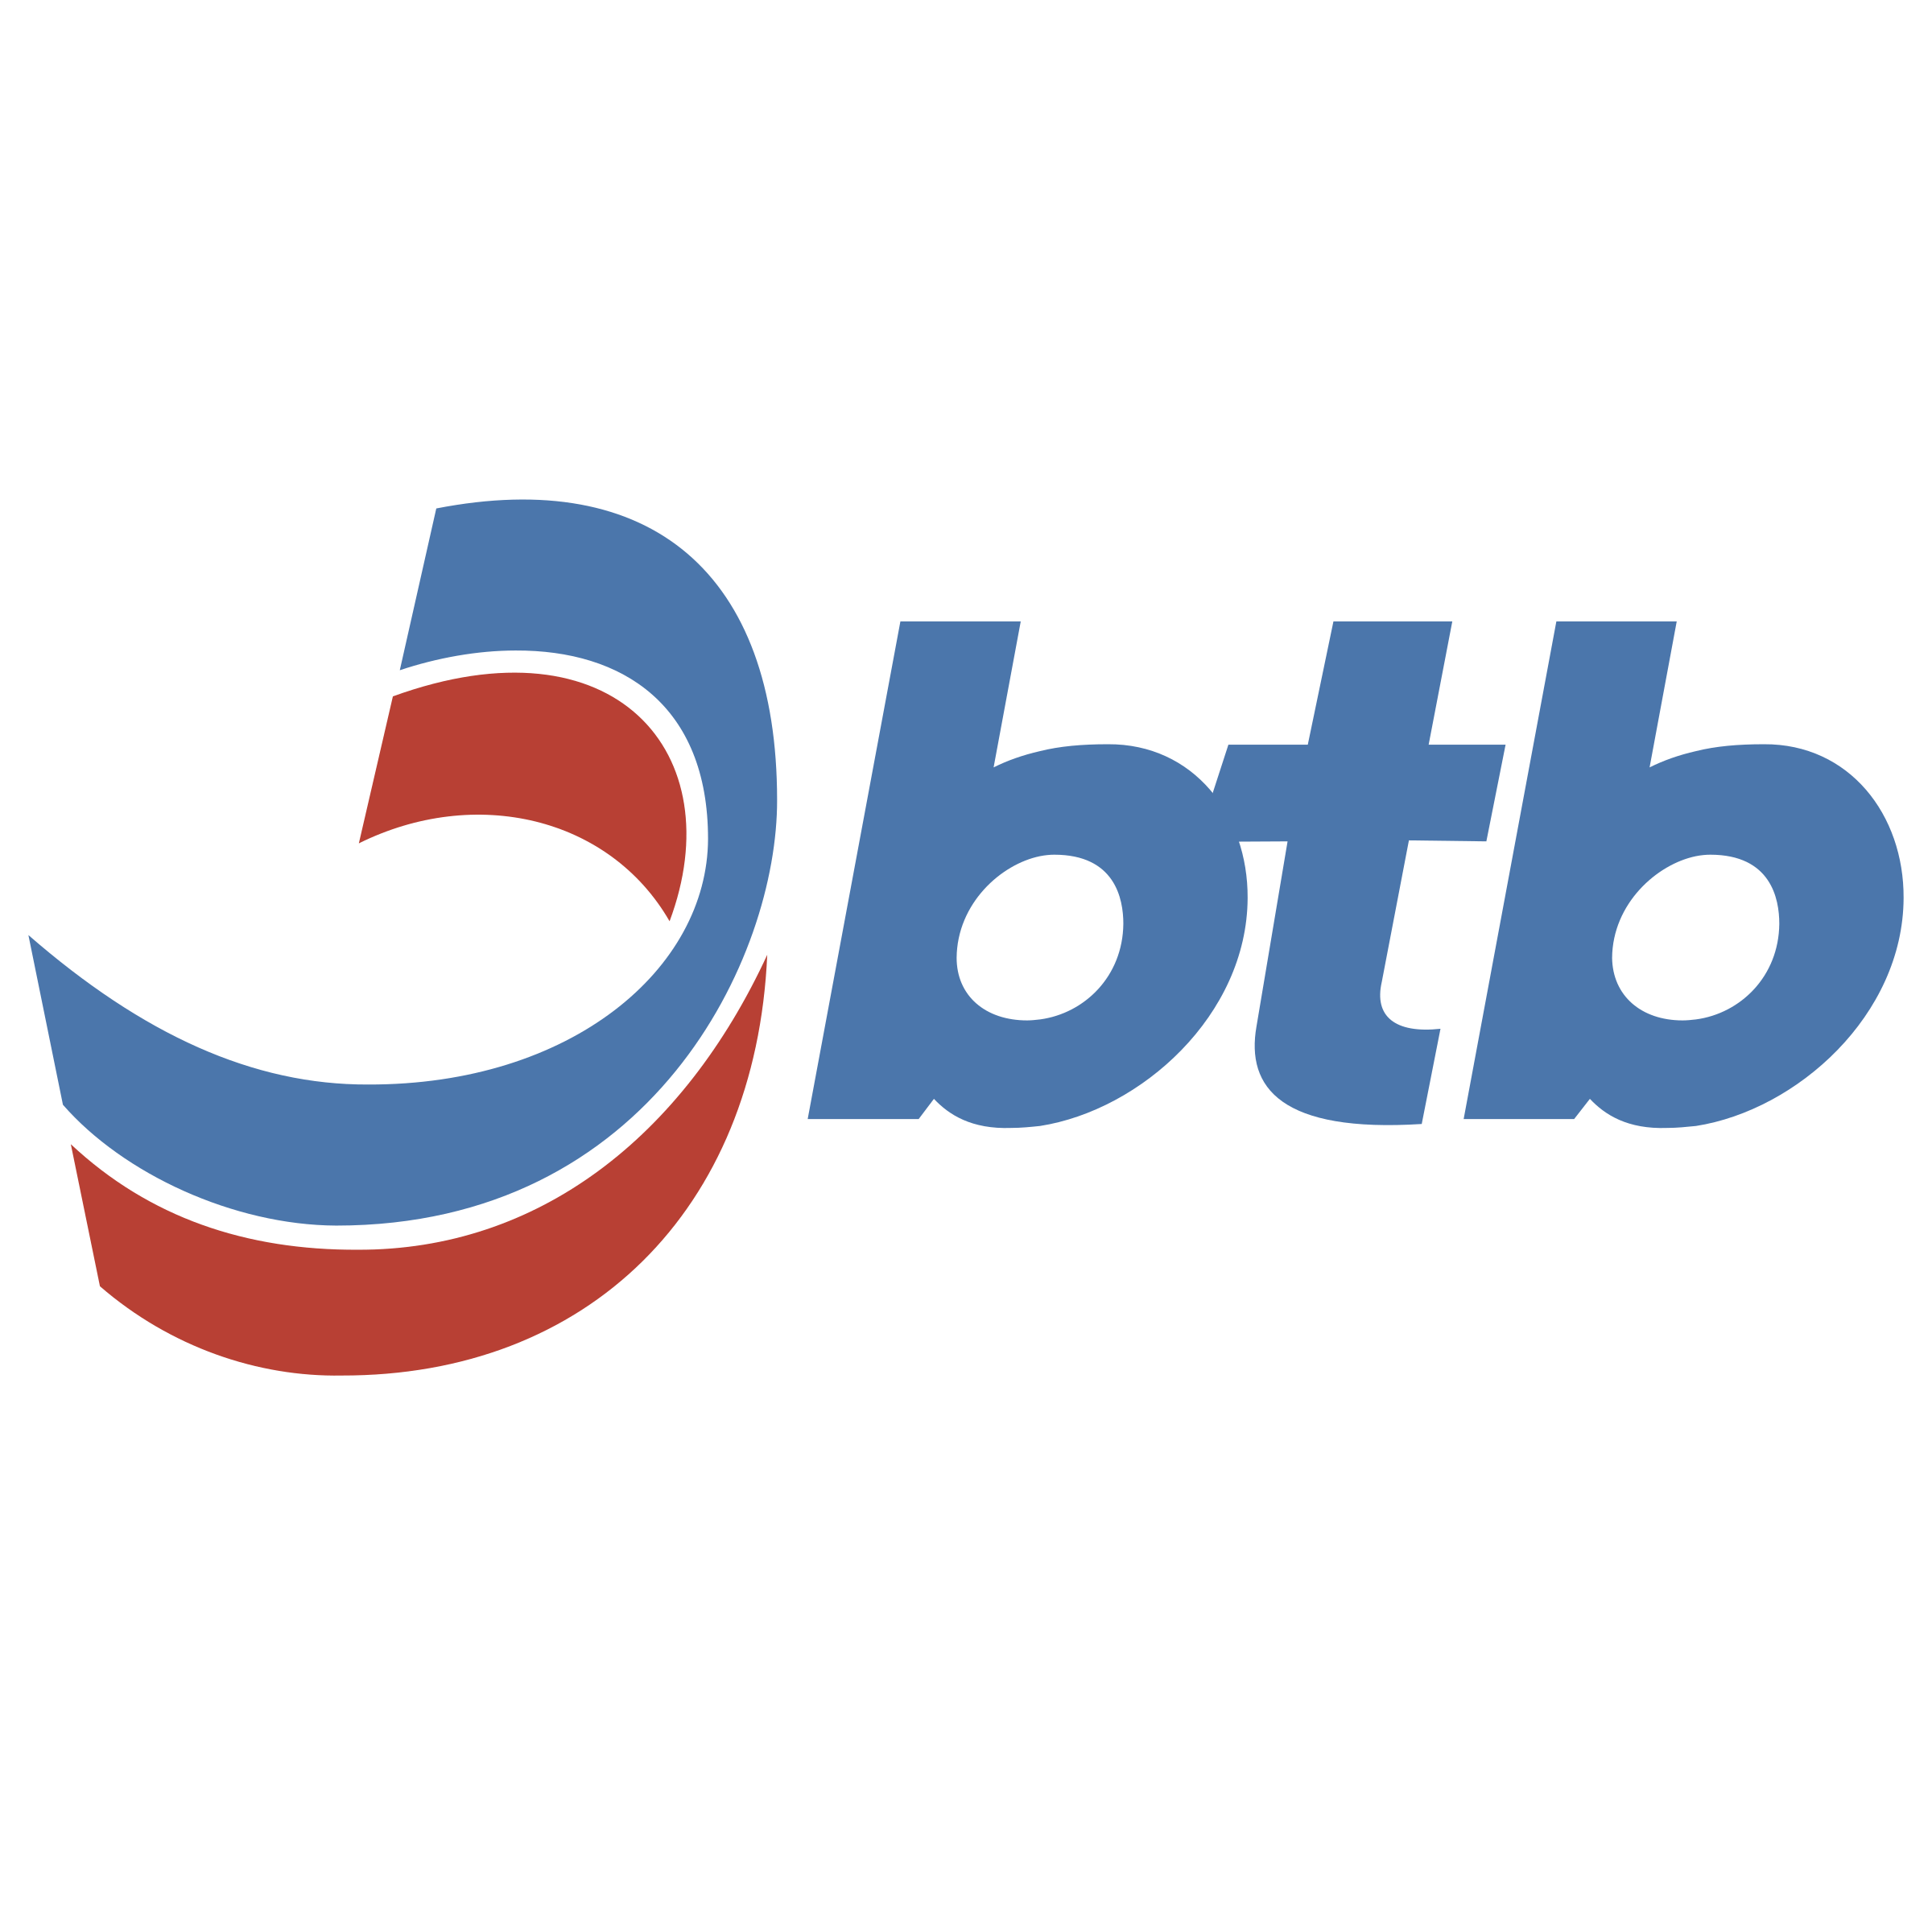 BTB Logo - BTB Logo PNG Transparent & SVG Vector - Freebie Supply